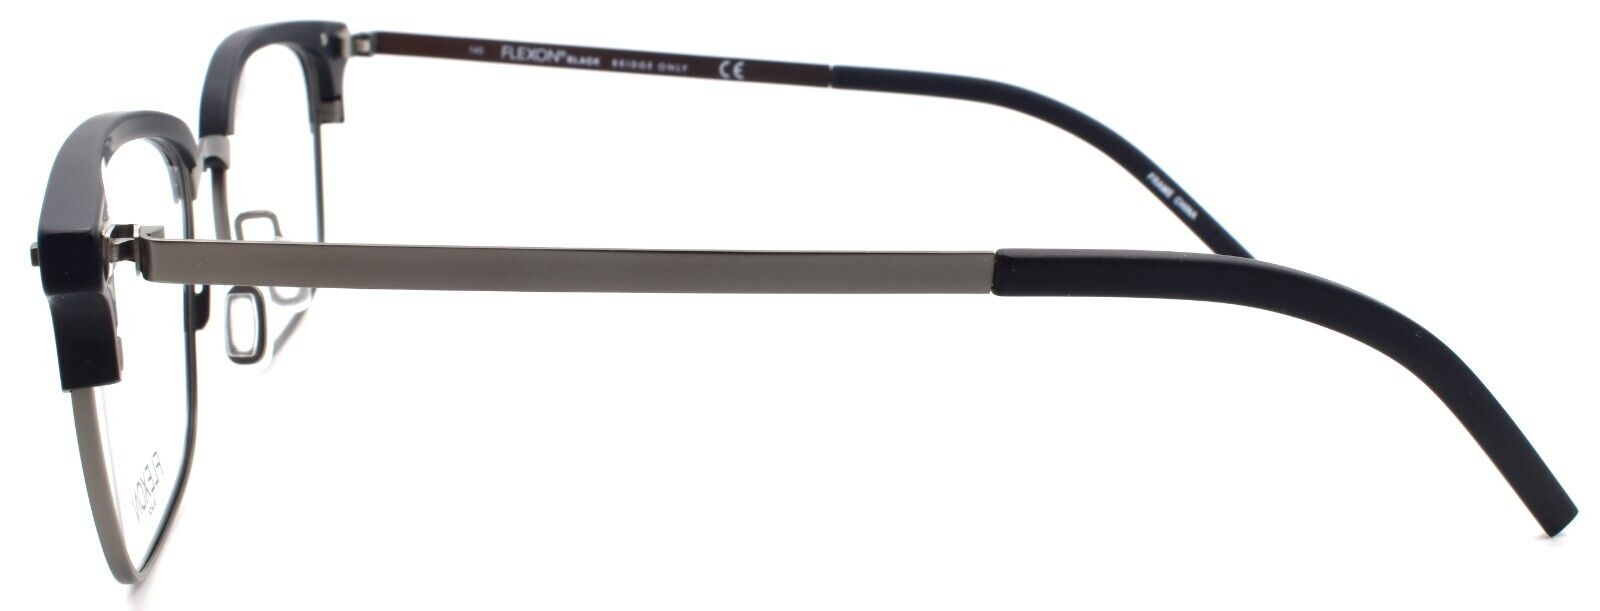 3-Flexon B2022 001 Men's Eyeglasses Frames Black 55-19-145 Flexible Titanium-886895450454-IKSpecs